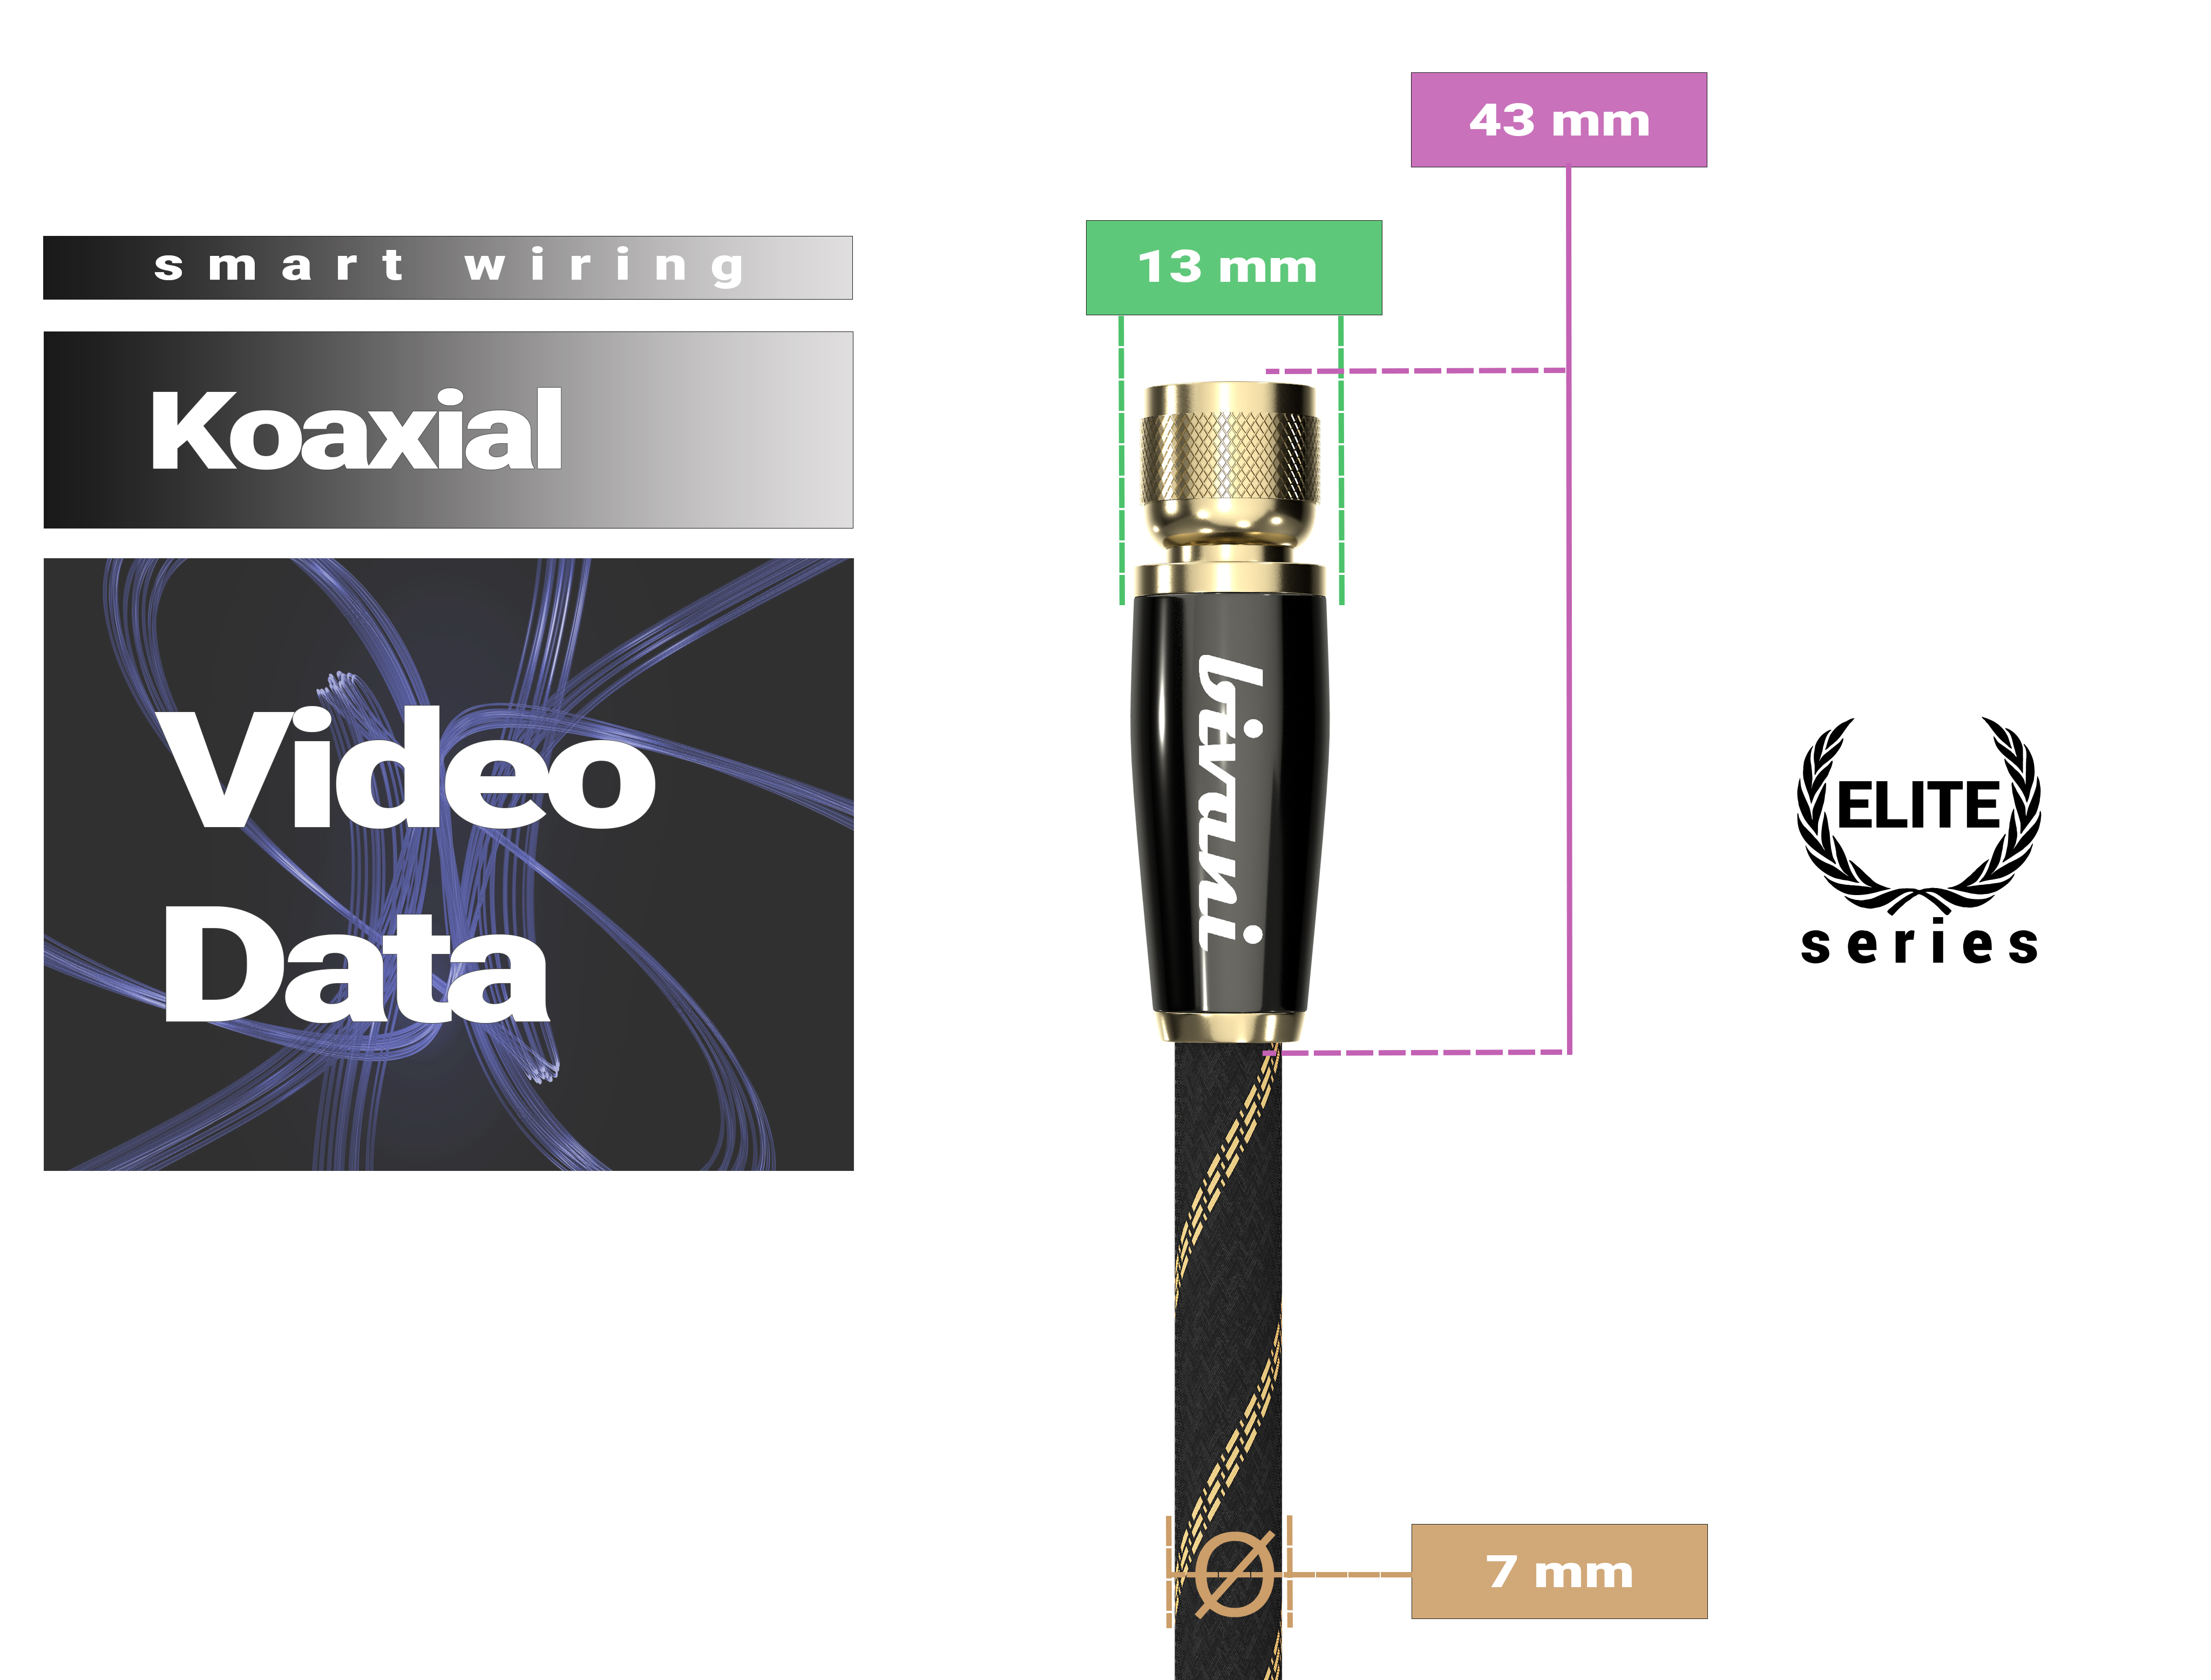 BIVANI Premium SAT Antennenkabel - Elite-Series Koaxialkabel F-Stecker